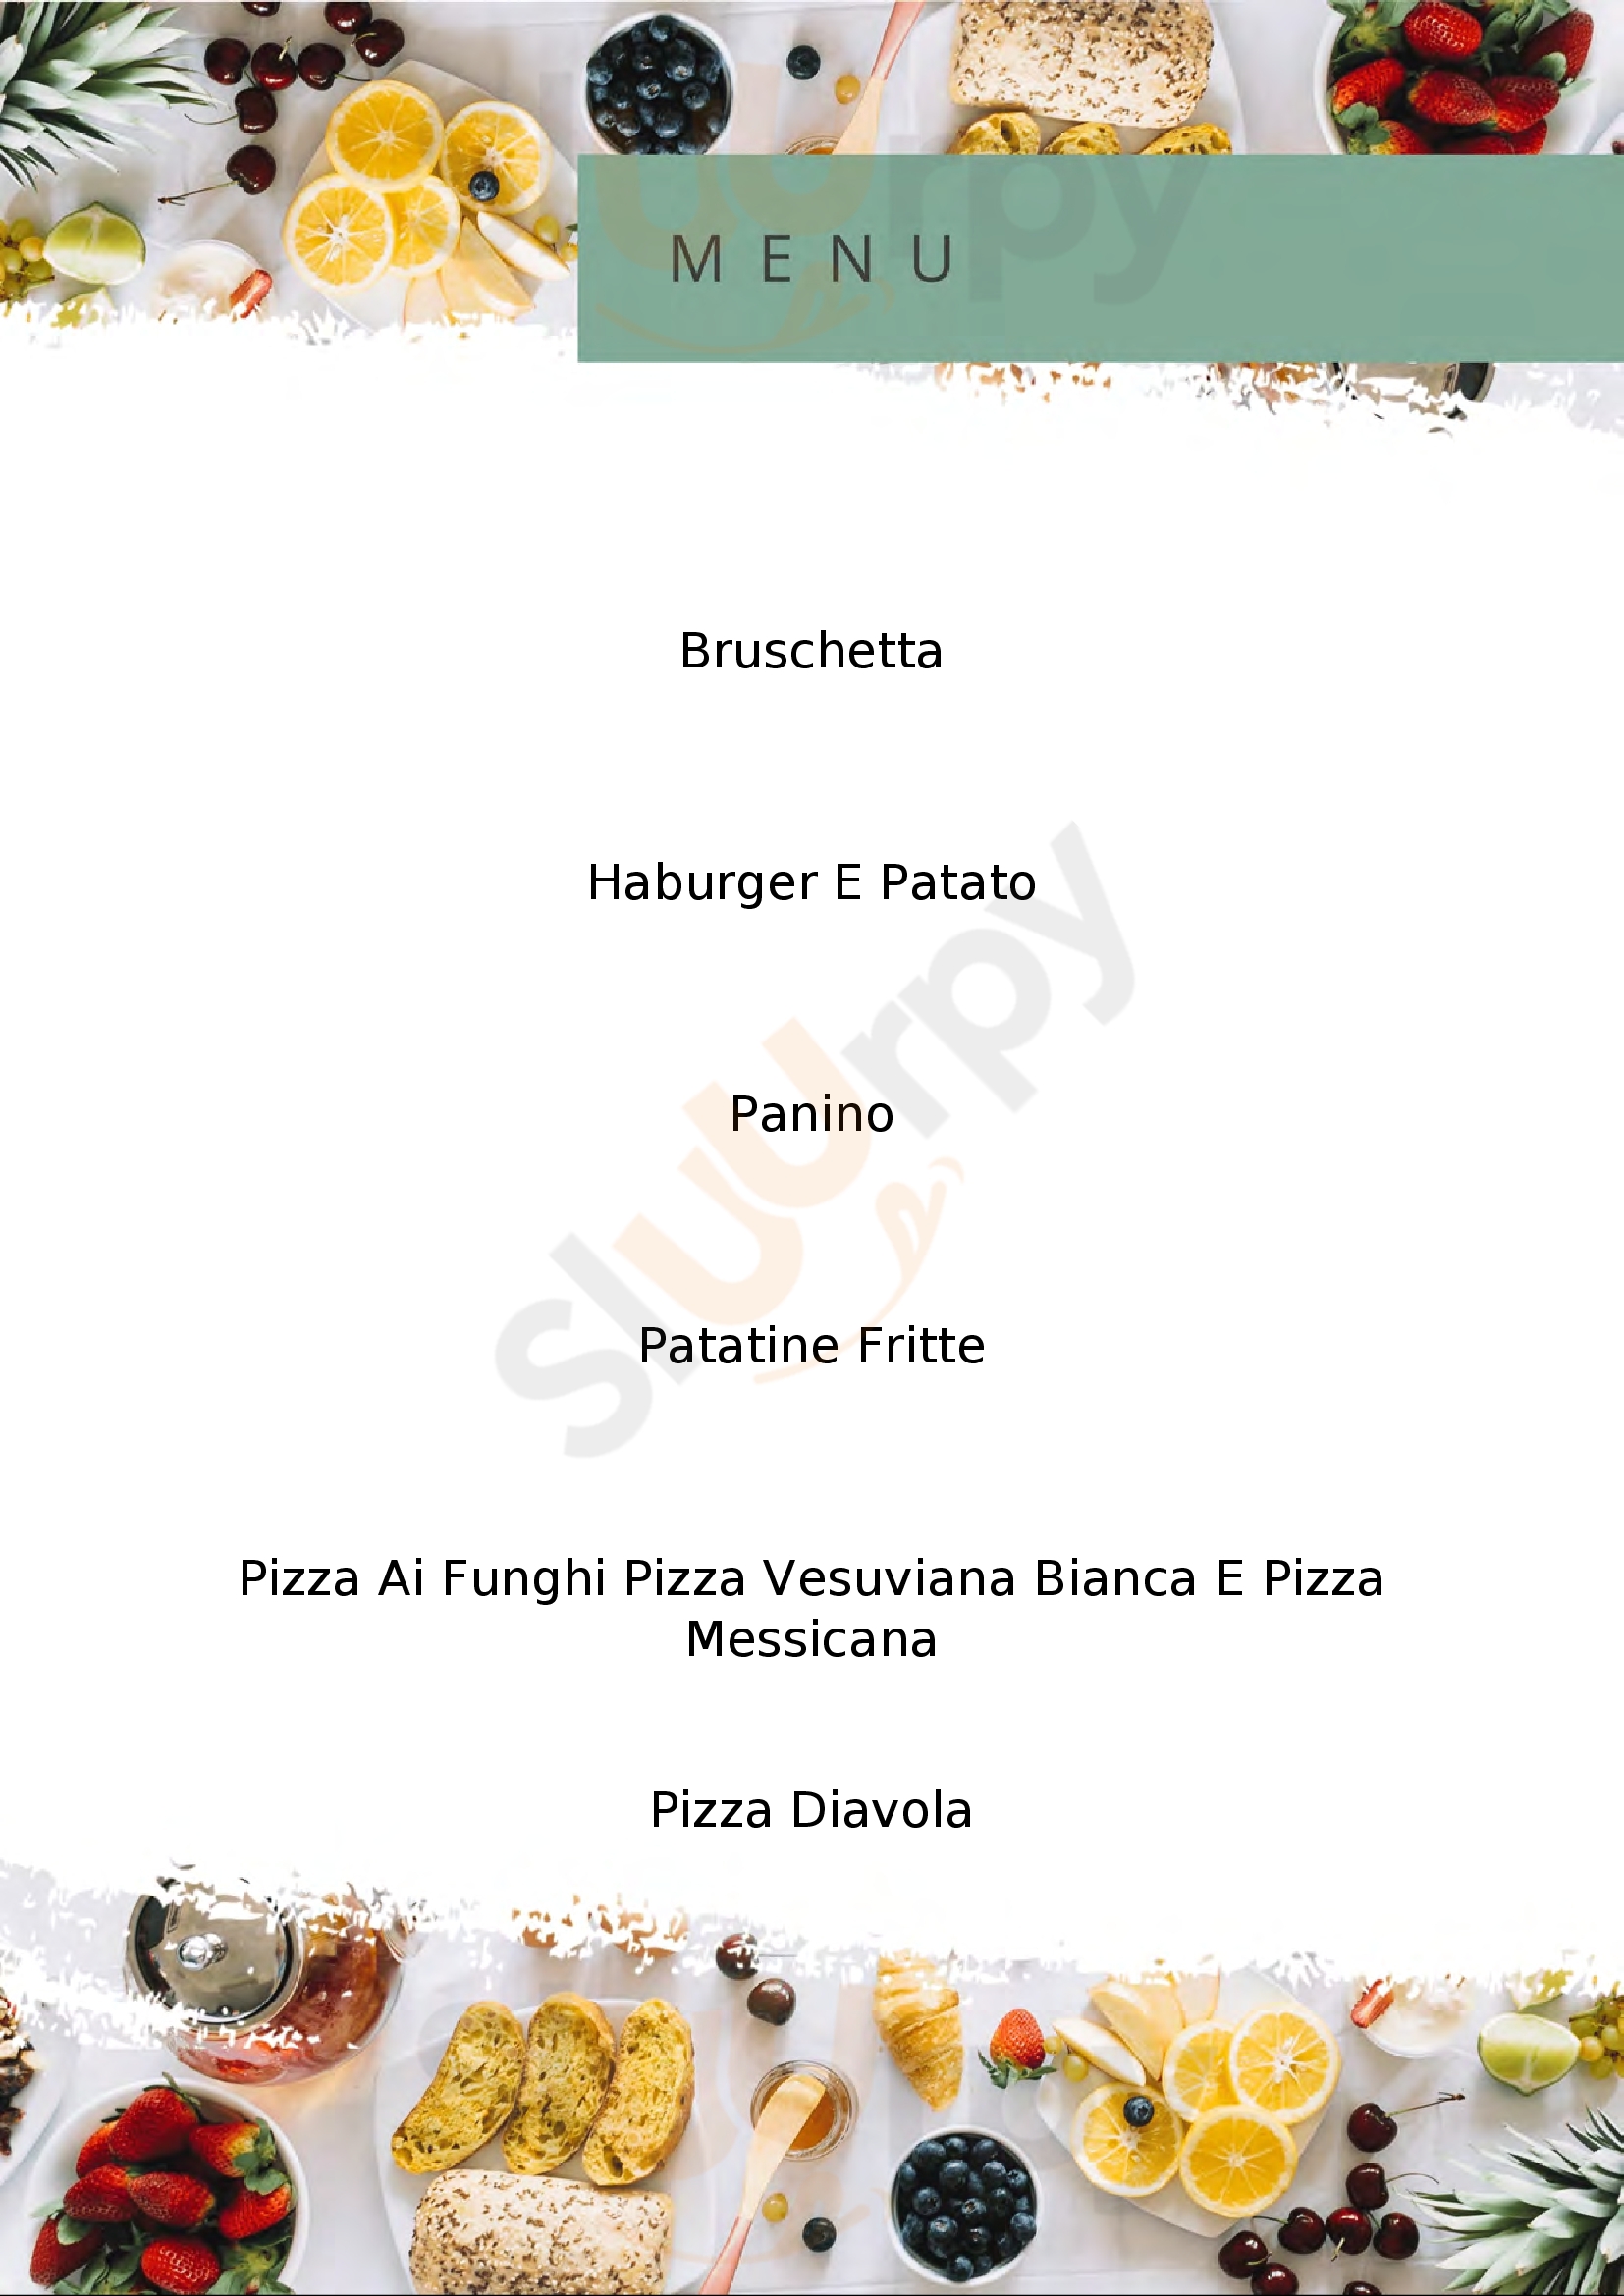 Magic Pizza Belvedere Marittimo menù 1 pagina